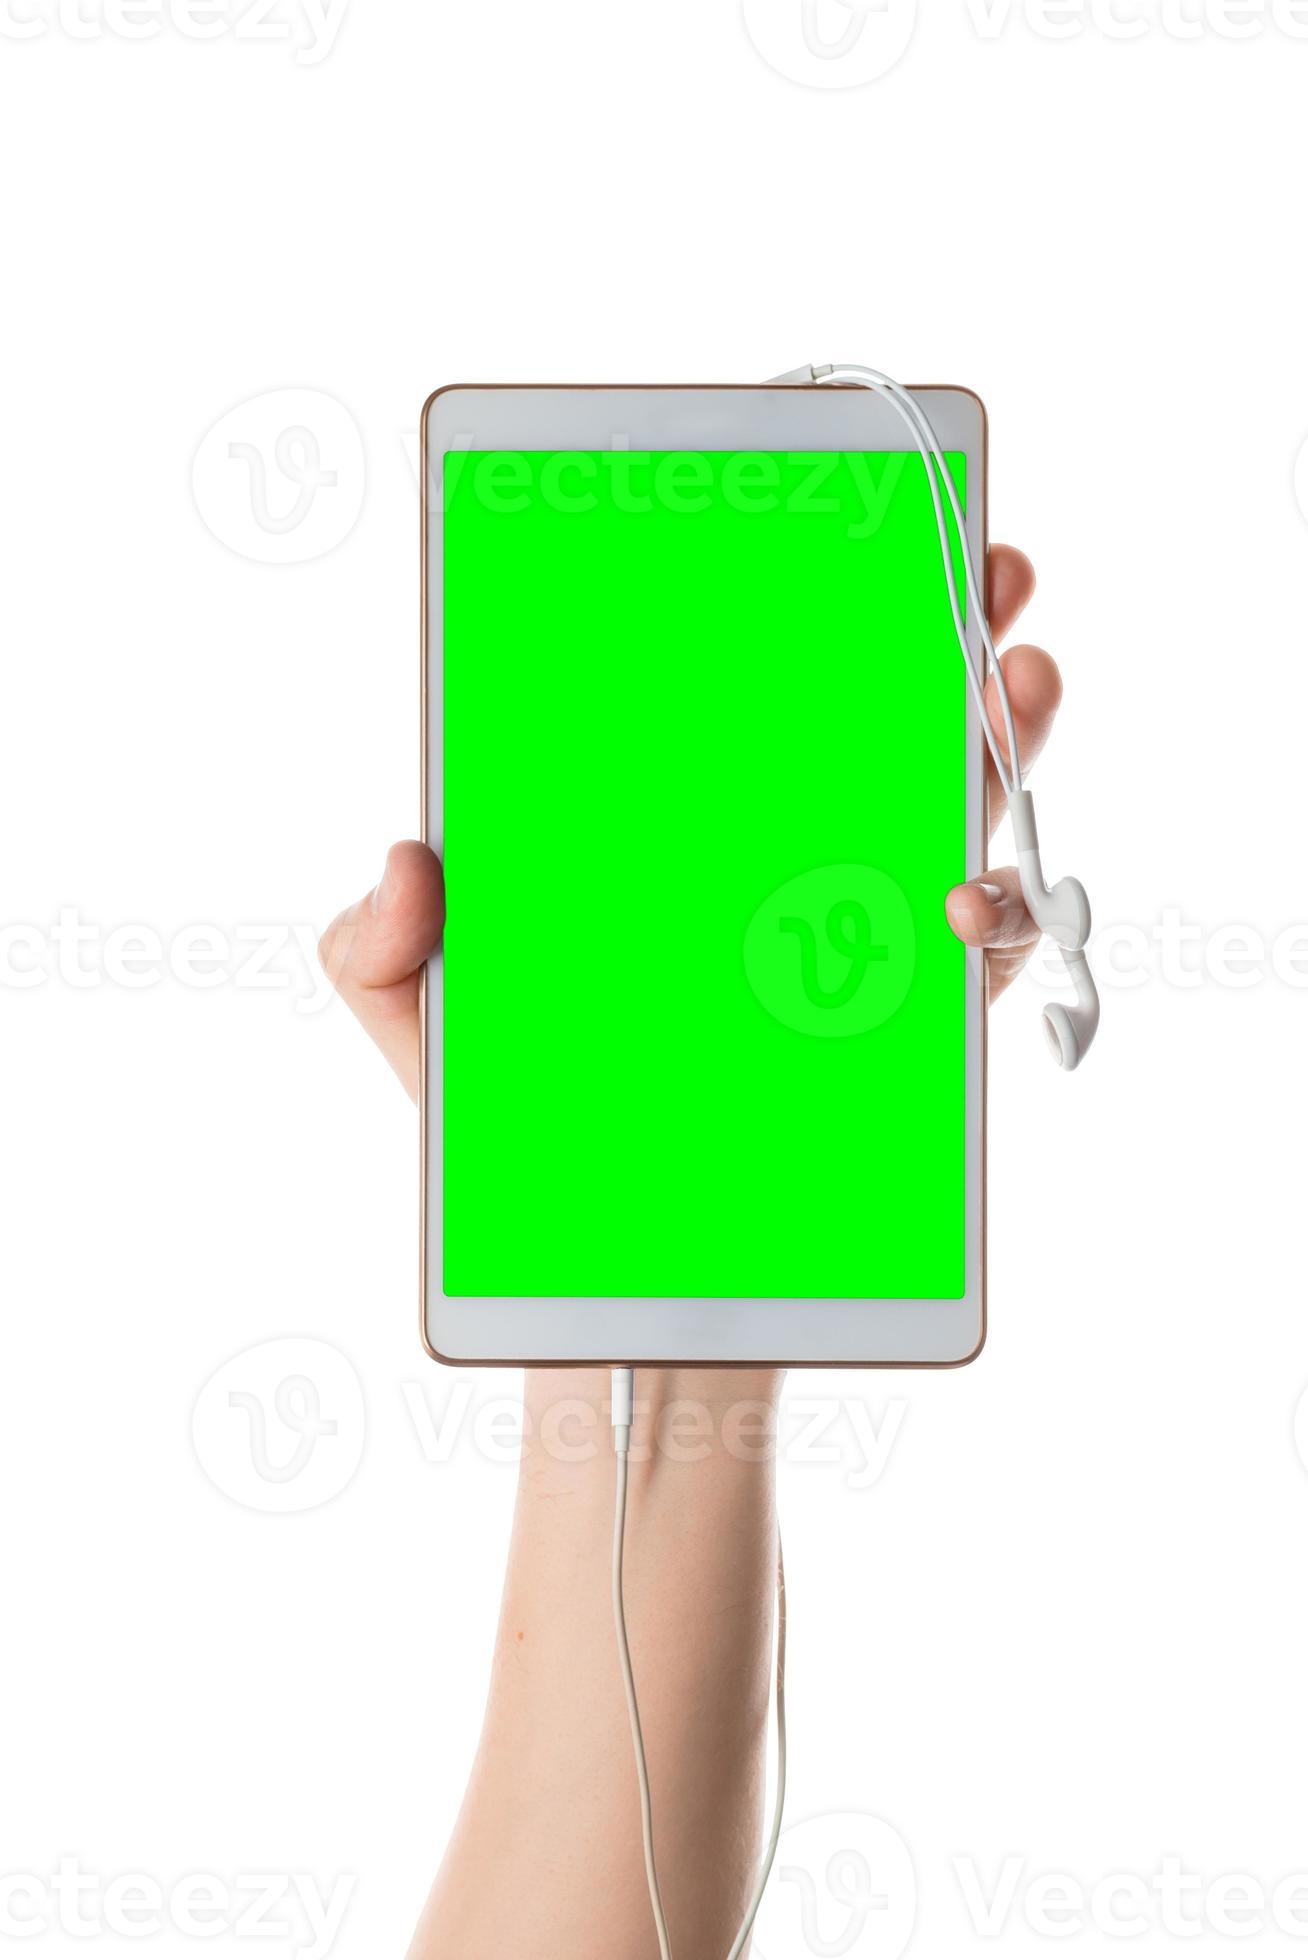 la main masculine tient une tablette blanche avec des écouteurs branchés. écran isolé avec clé chroma et tous isolés sur fond blanc. photo